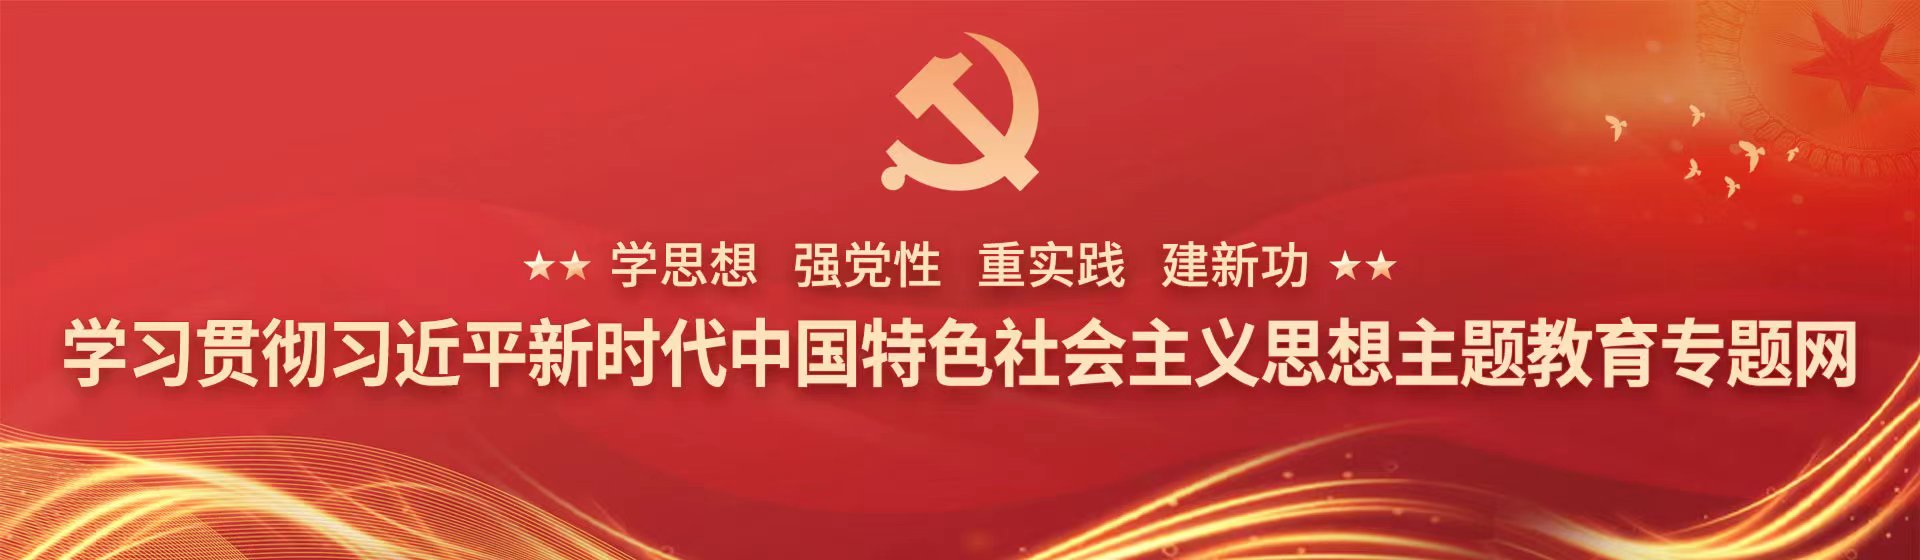 学习贯彻习近平新时代中国特色社会主义思想主题教育专题网